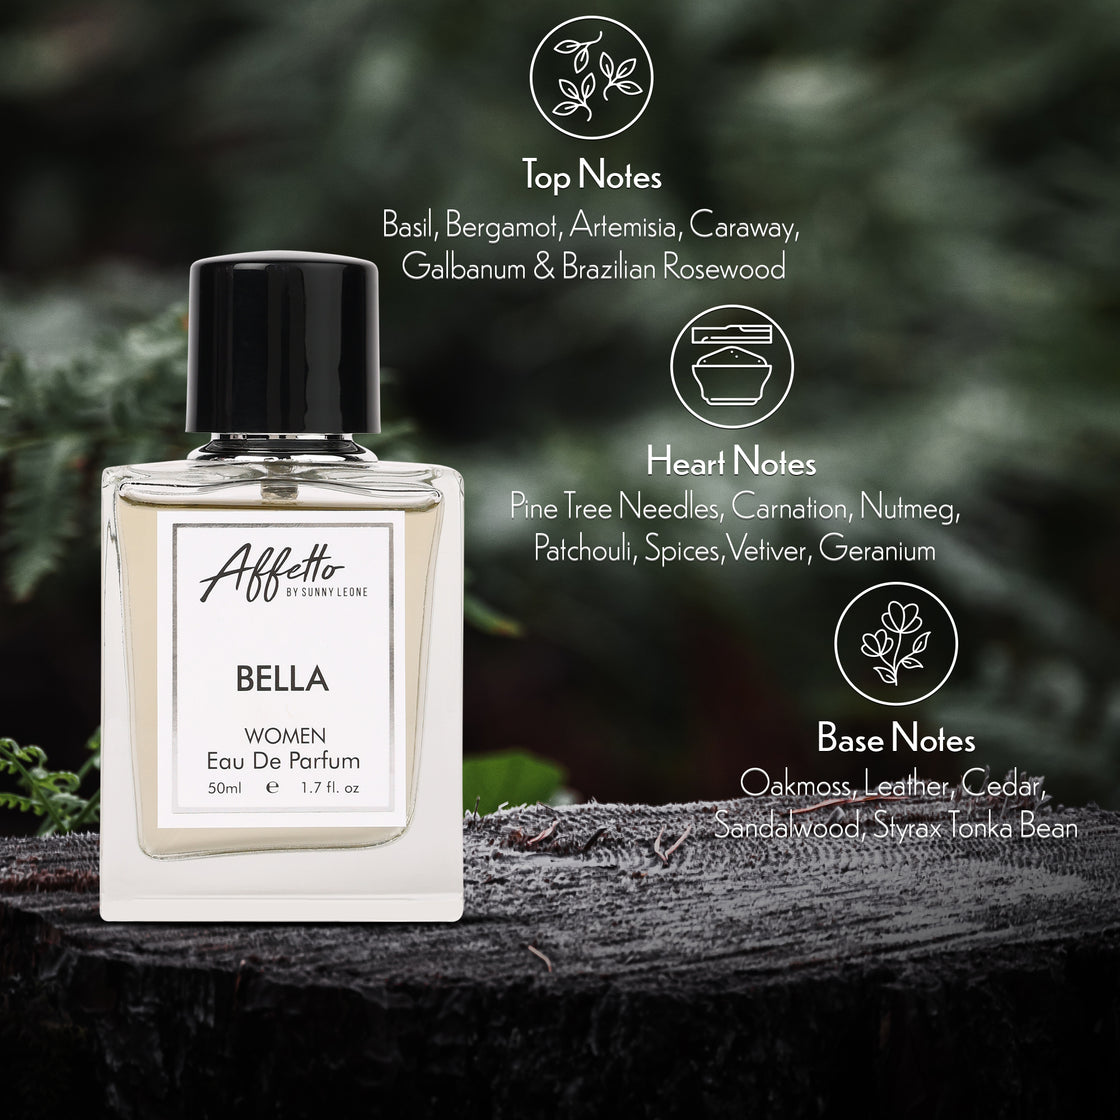 Bella - For Her (50ml)-Perfume-cruelty free cosmetics-Sunny Leone